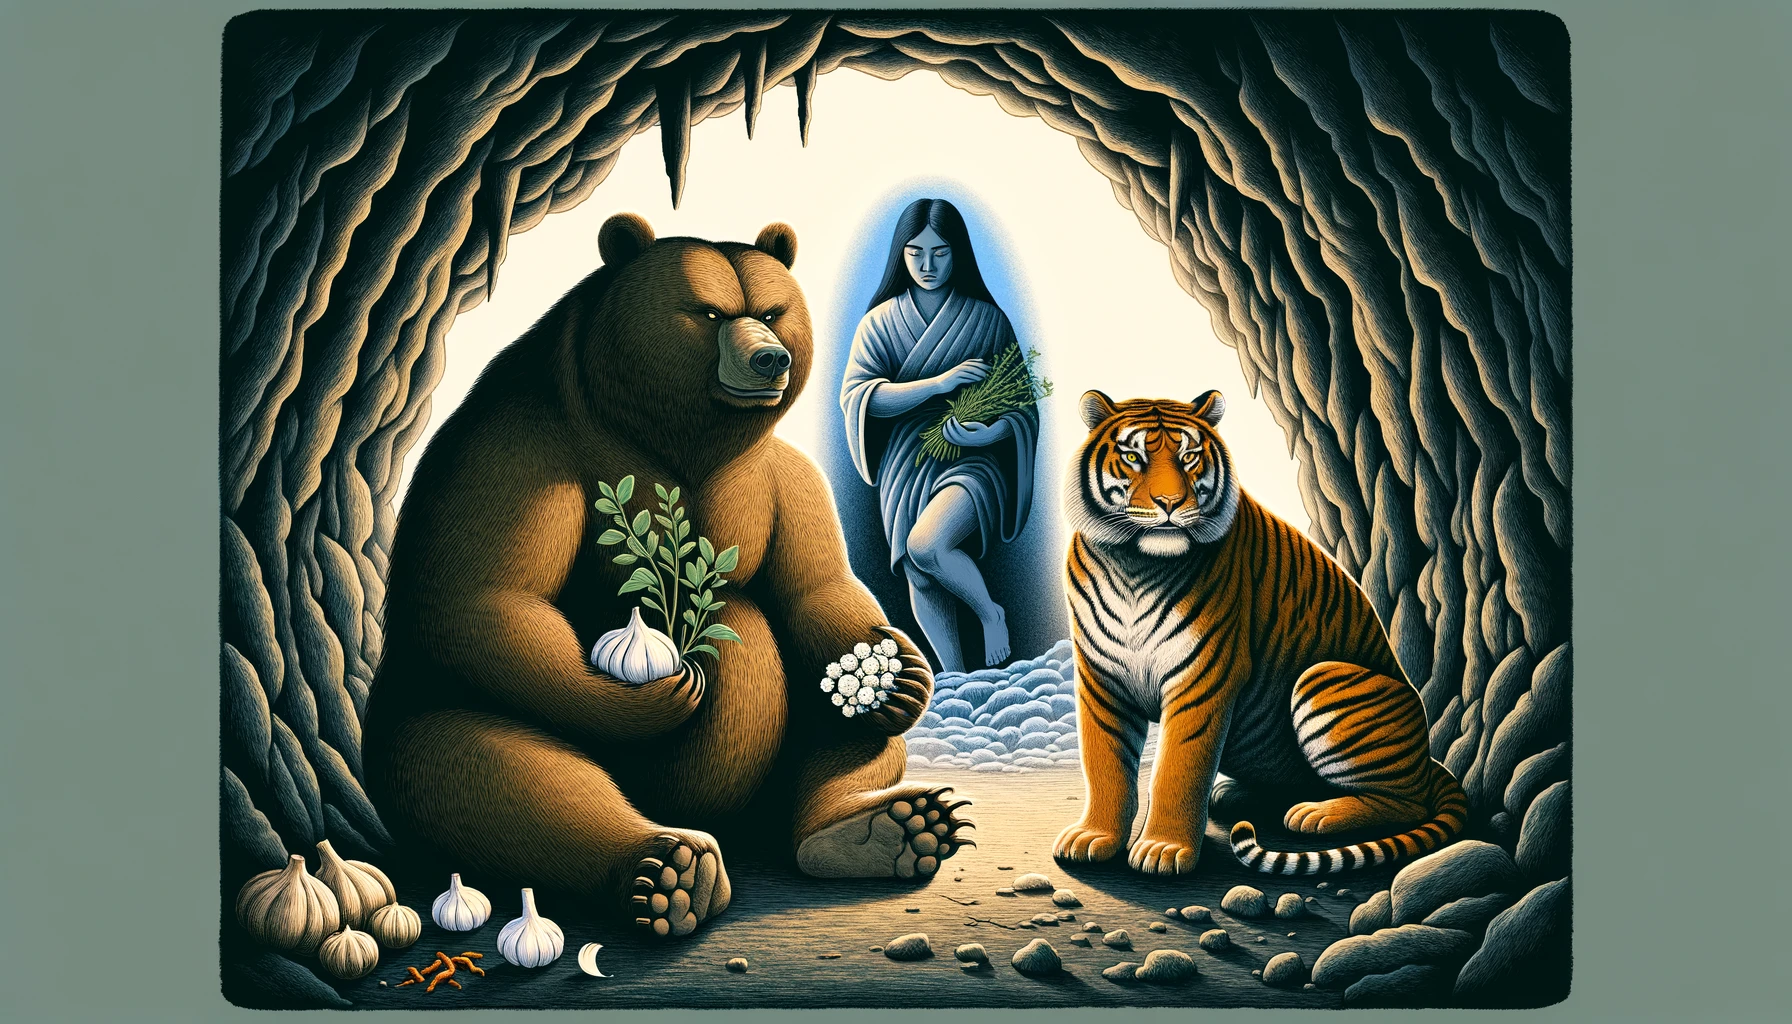 Interior de una cueva donde una osa y un tigre están sentados, con la osa sosteniendo ajo y artemisa.